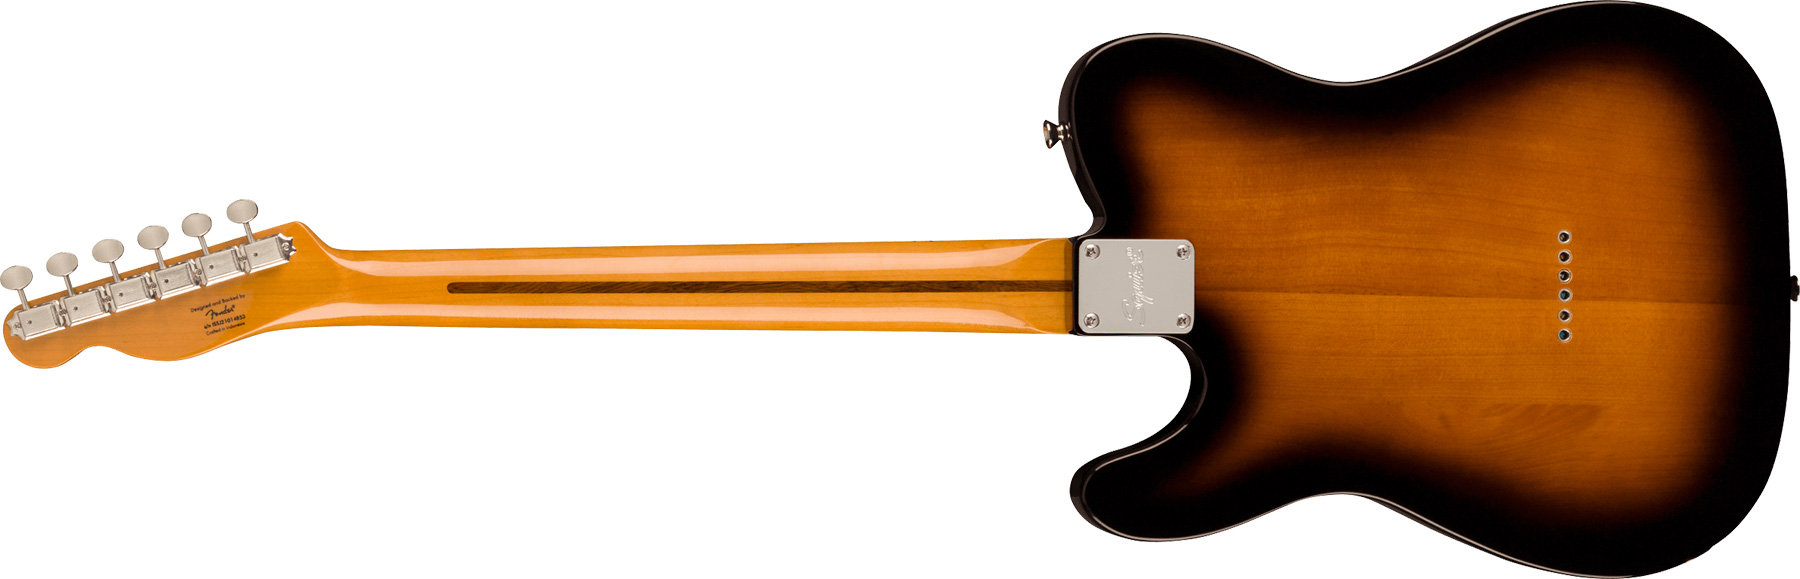 Squier Tele '50s Parchment Pickguard Classic Vibe Fsr 2s Ht Mn - 2-color Sunburst - E-Gitarre in Teleform - Variation 1